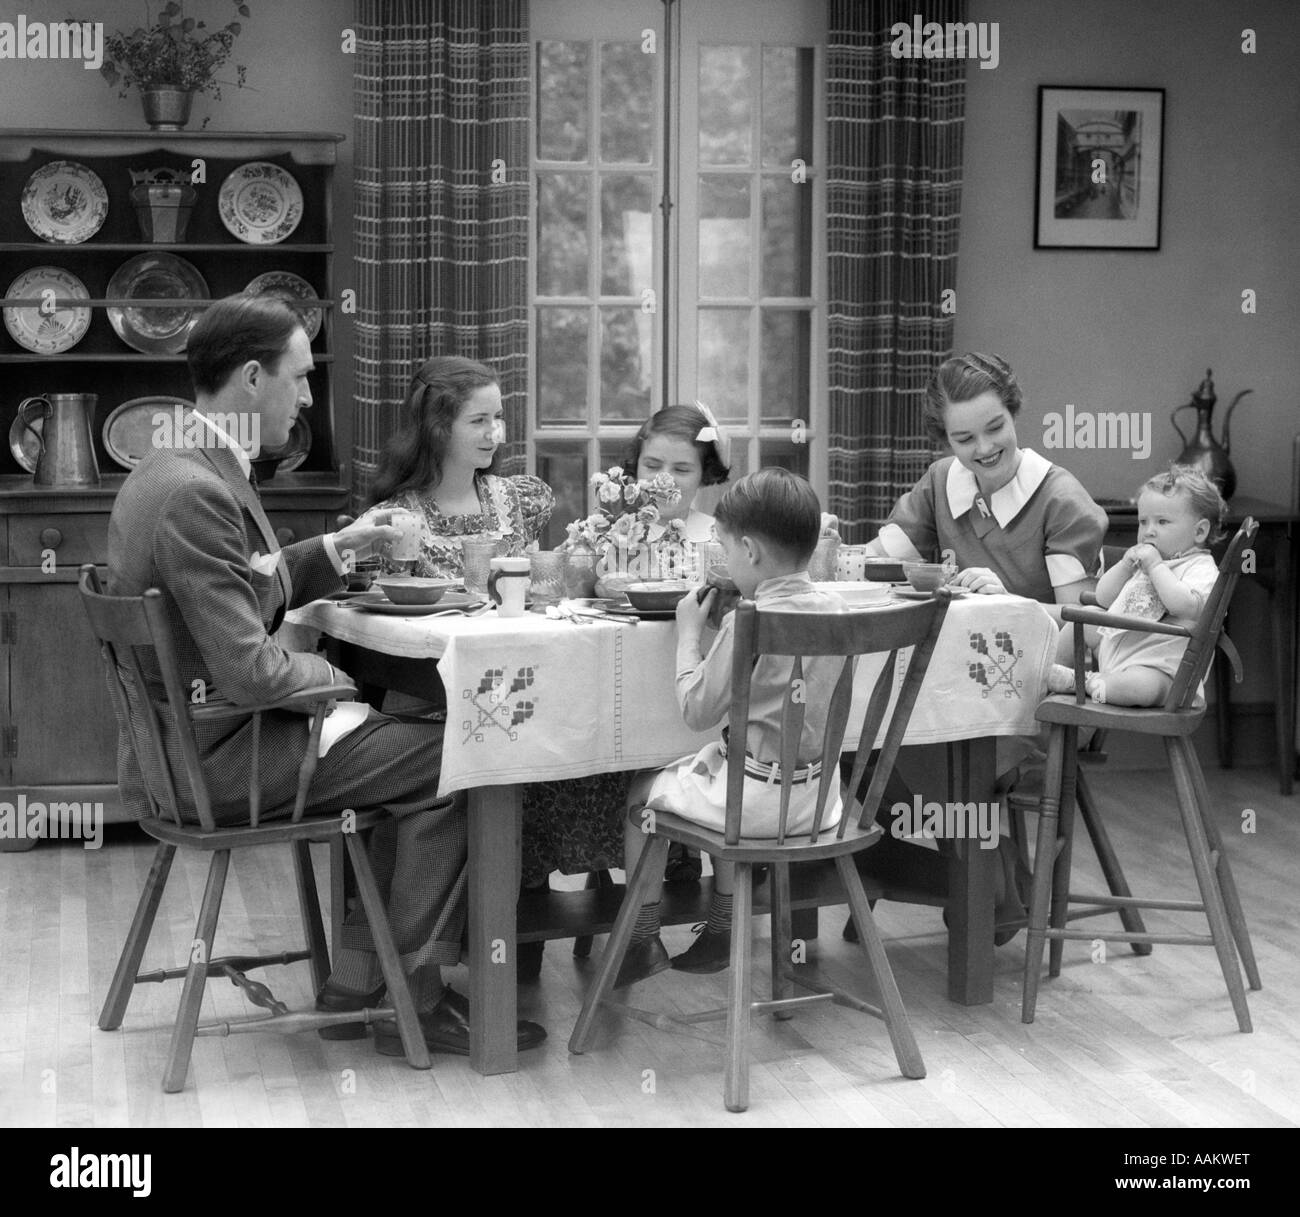 1930s famiglia di 6 seduta al tavolo IN UNA SALA DA PRANZO DI MANGIARE LA PRIMA COLAZIONE il bambino è seduto in una sedia alta Foto Stock